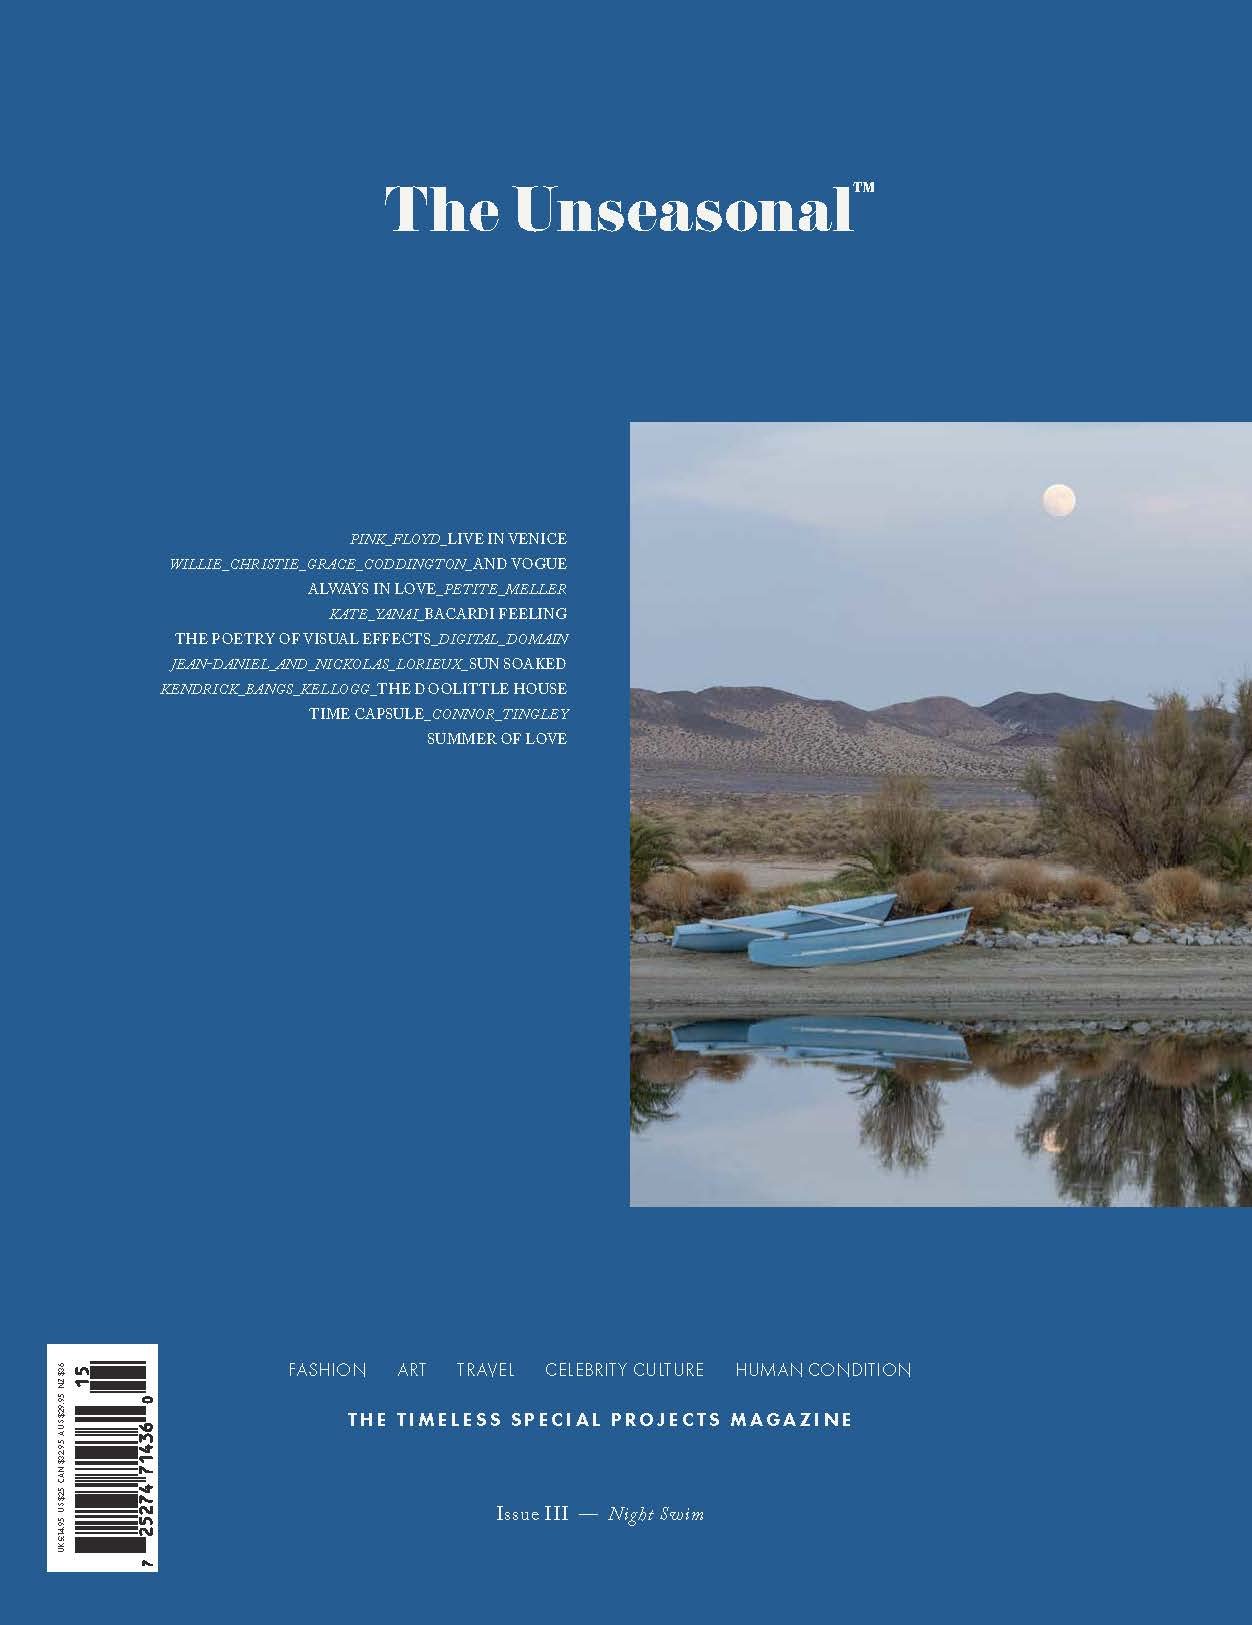 The Unseasonal (magazine)